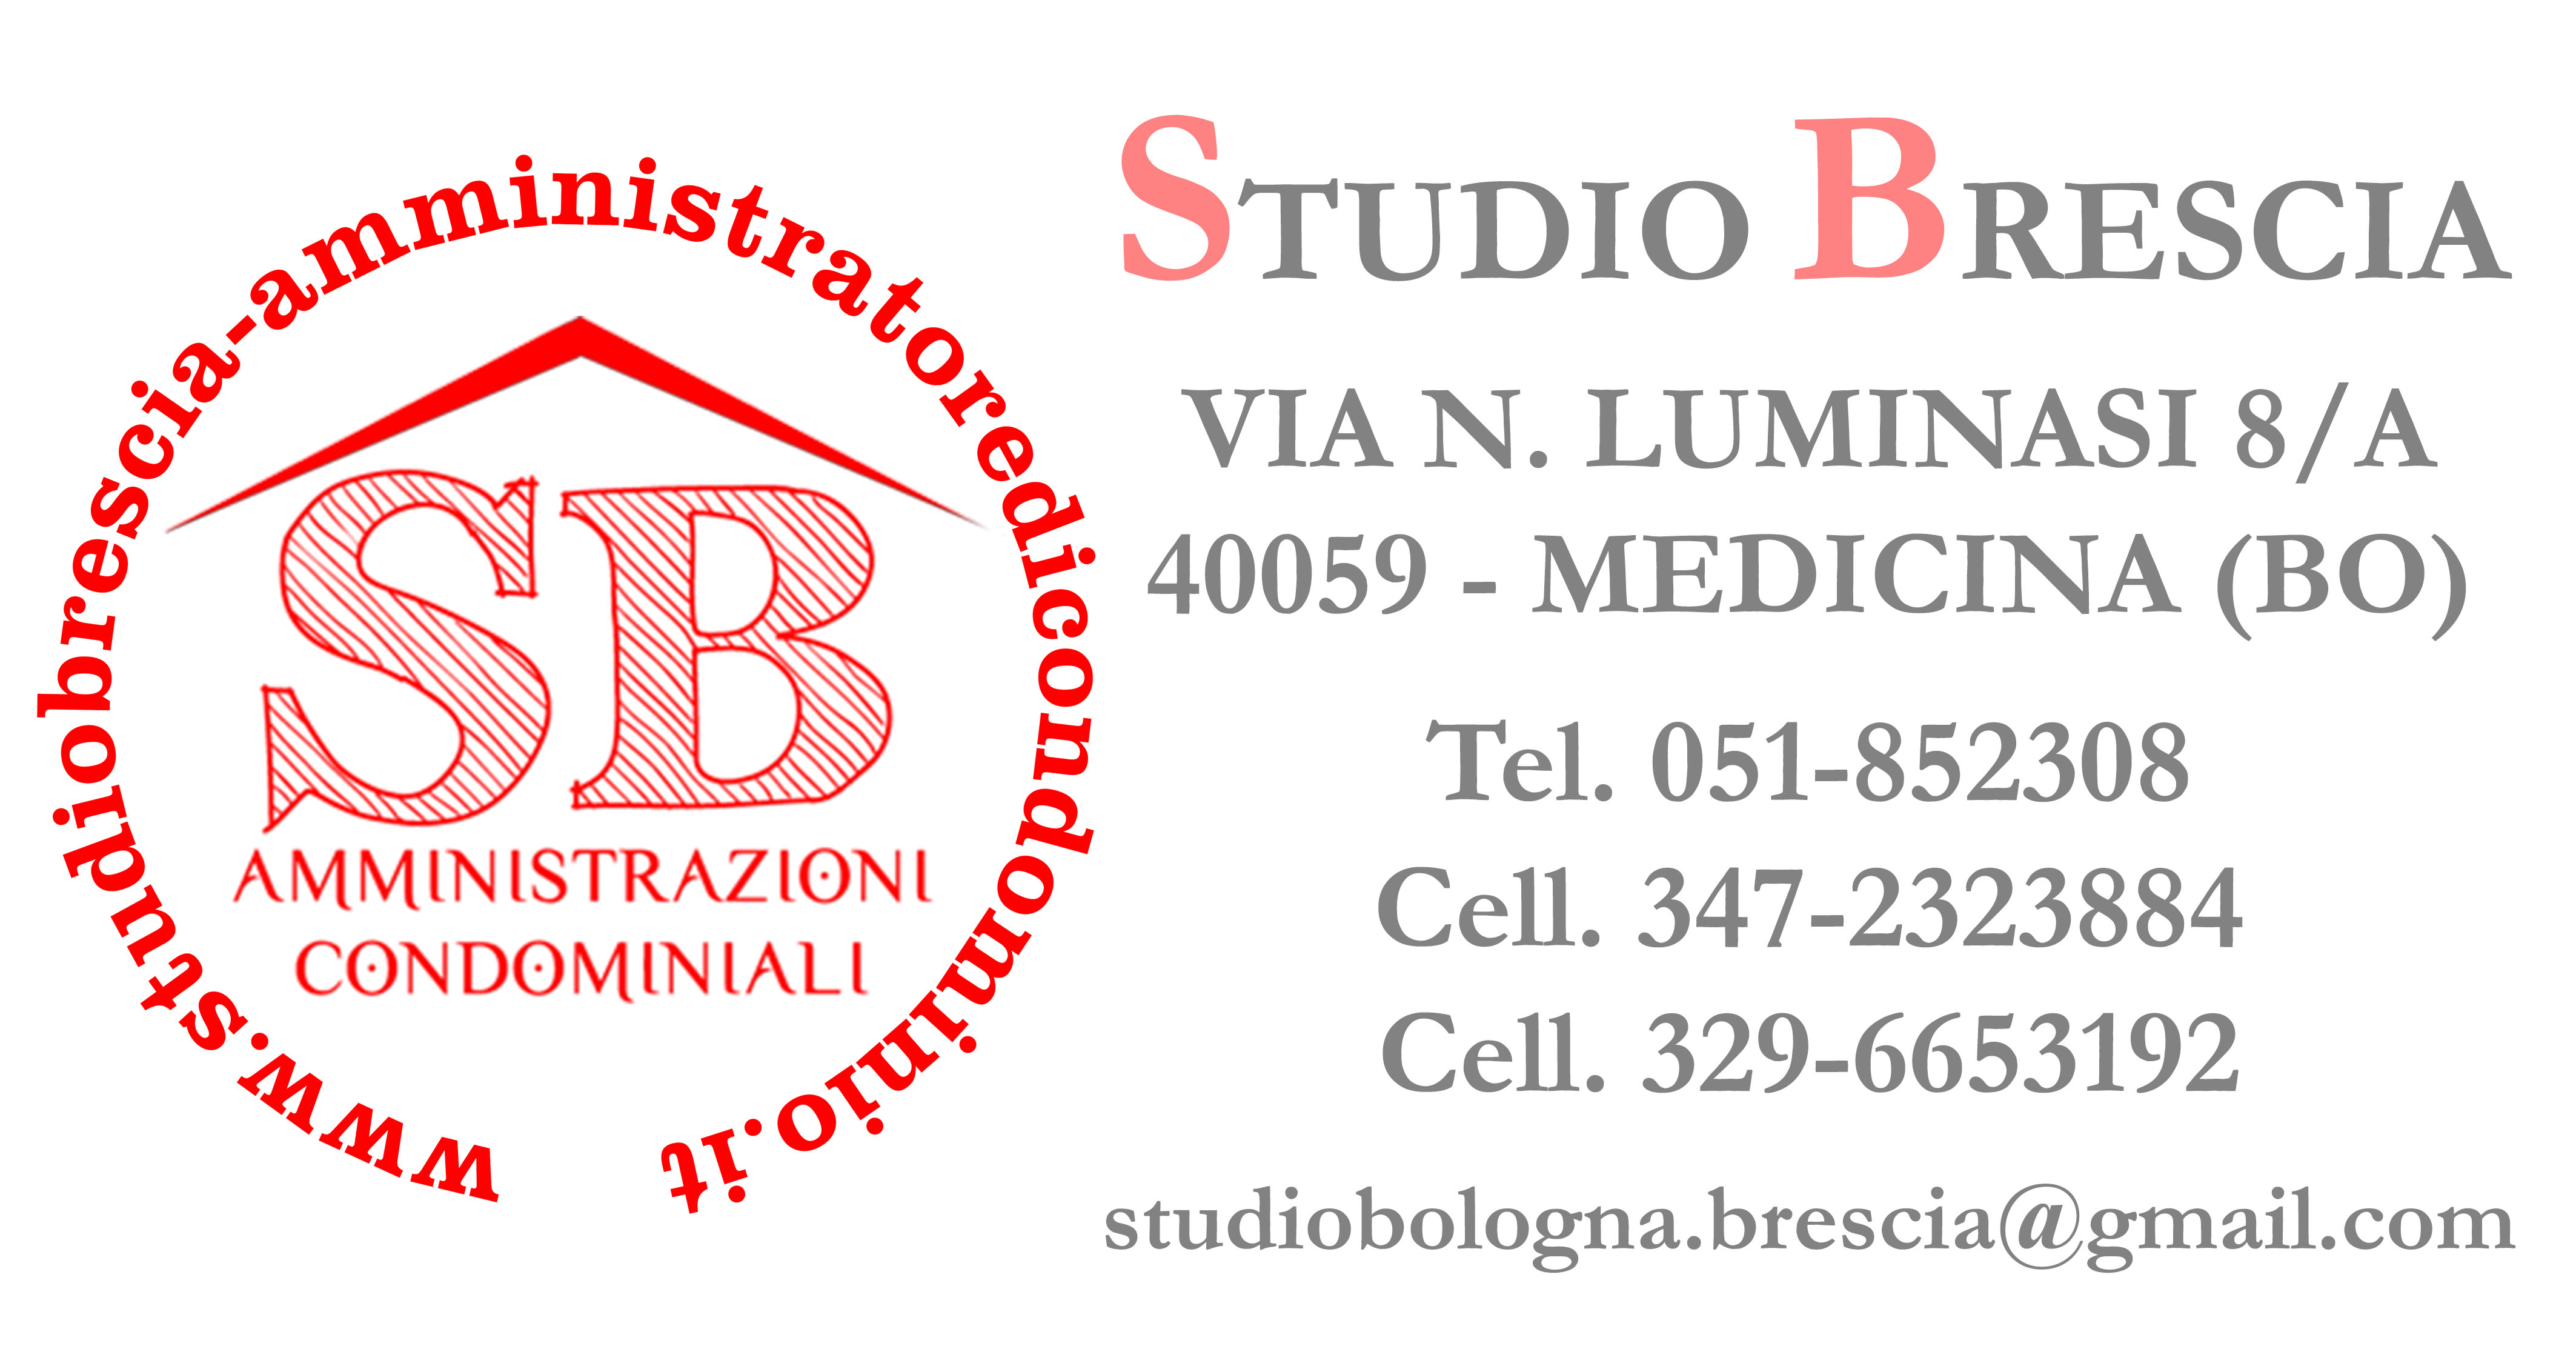 Banner pubblicità Studio Brescia